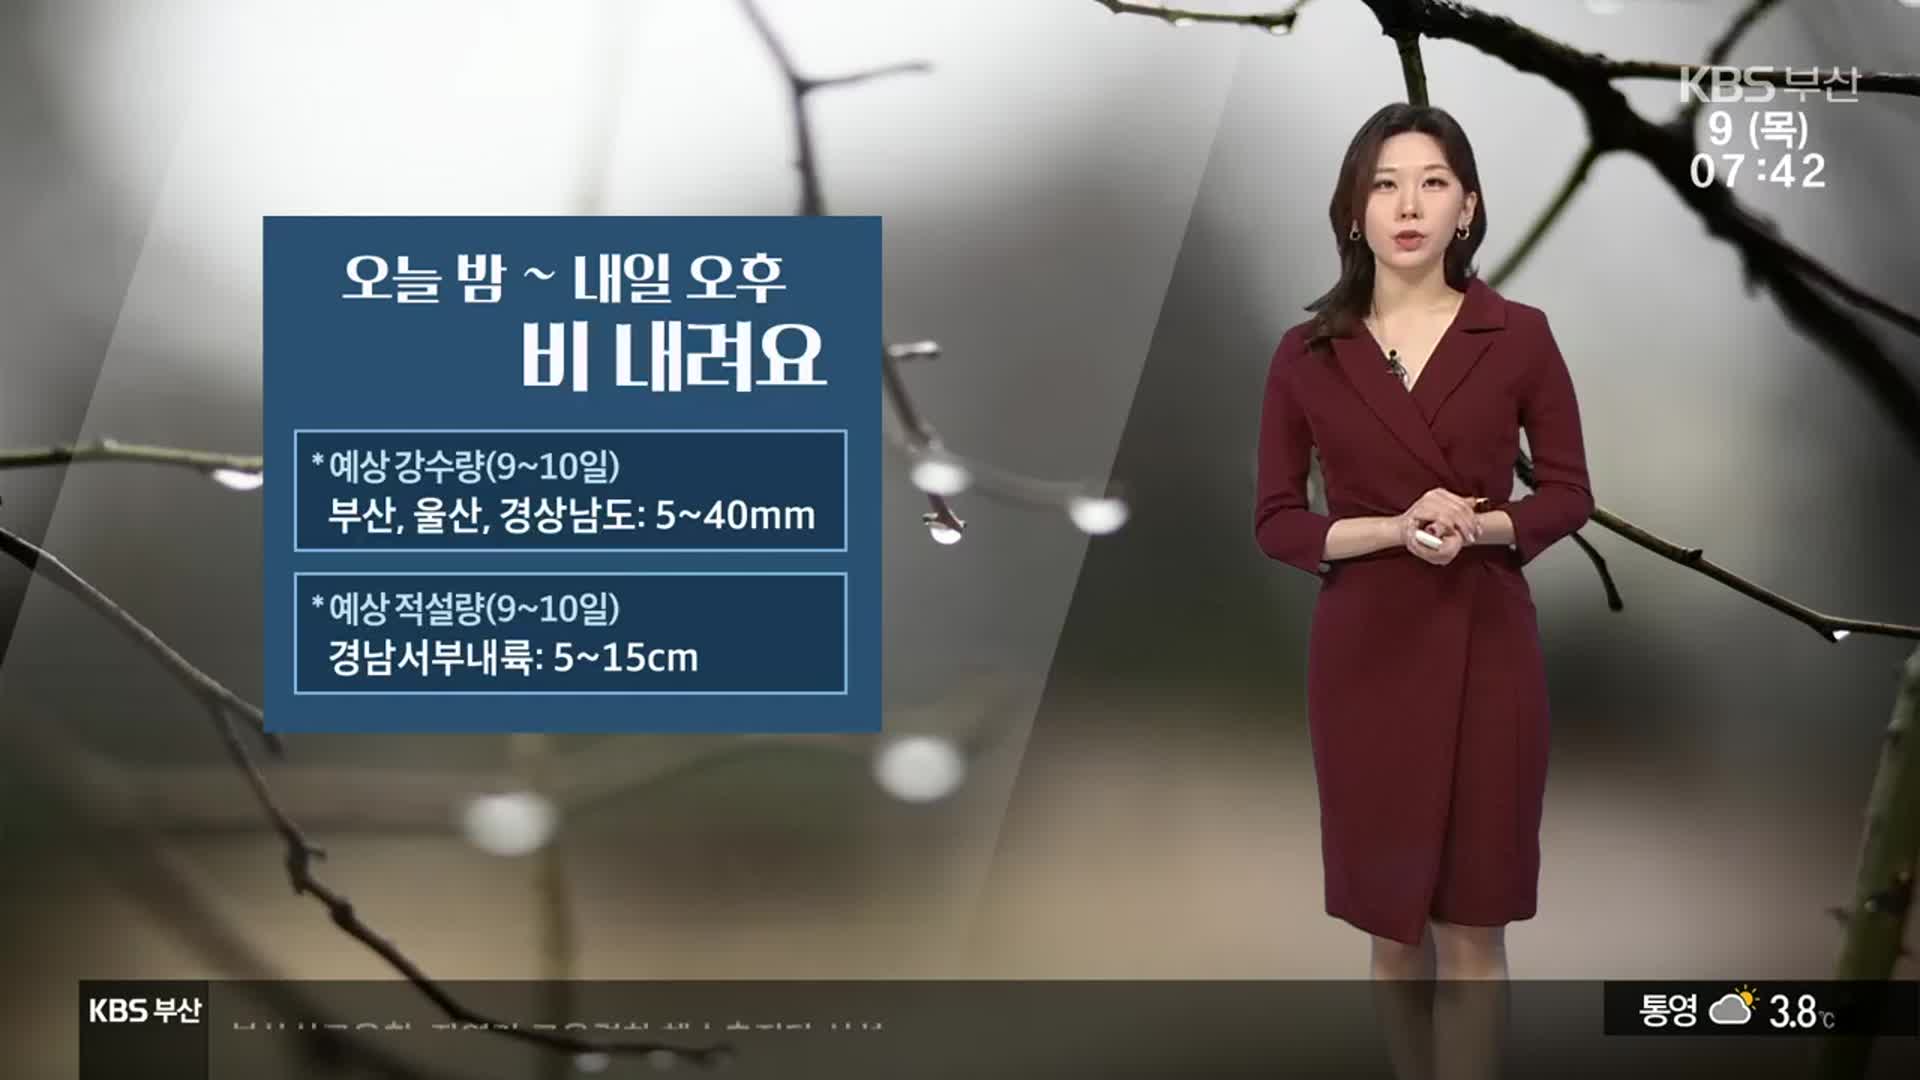 [날씨] 부산 아침 4.3도·낮 11도…밤부터 5~40mm ‘비’